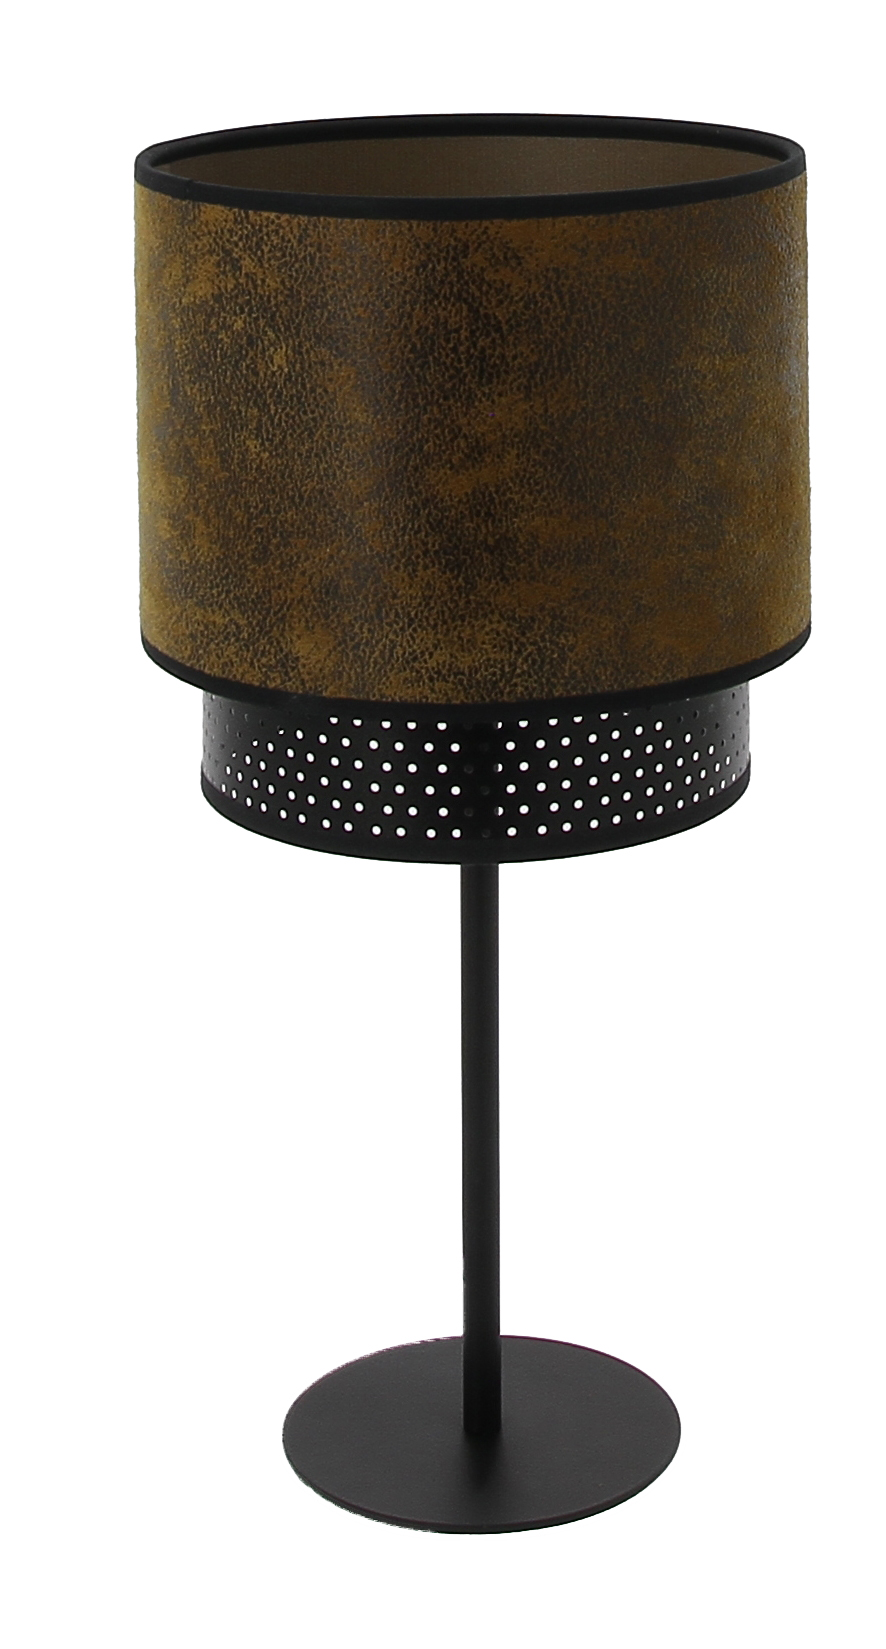 Lampe abat-jour Club style industriel best-seller cuir fabriqué en France